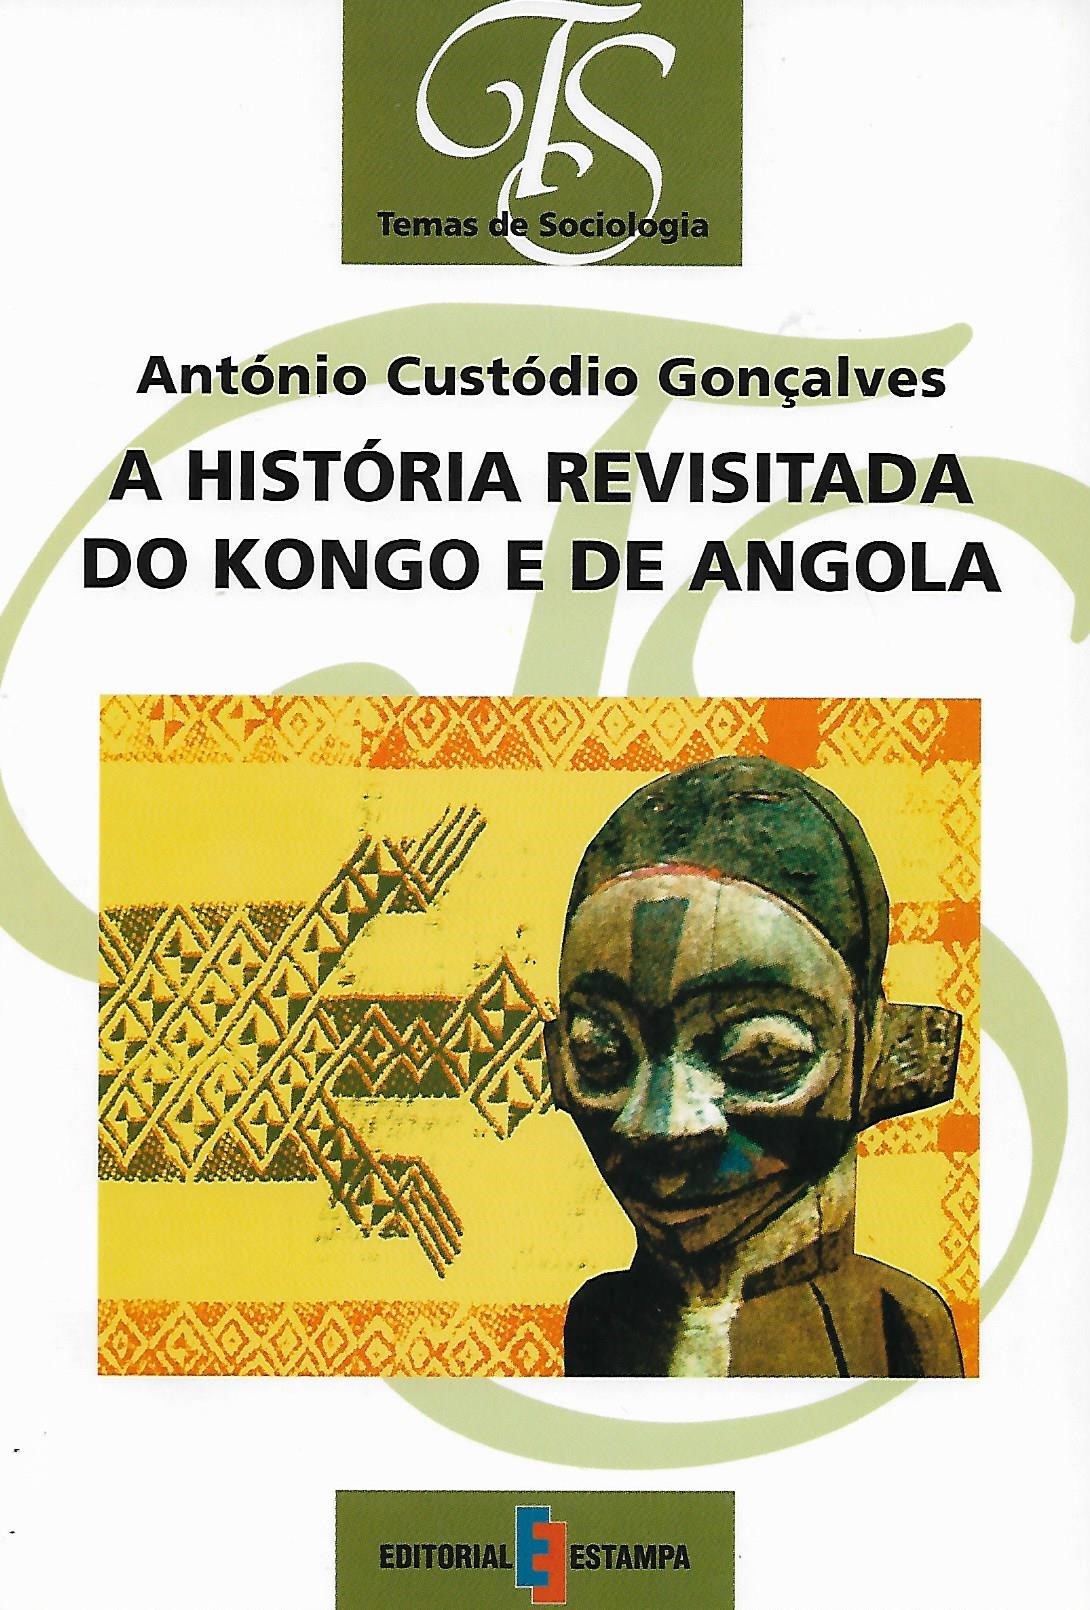 A HISTÓRIA REVISITADA DO KONGO E DE ANGOLA